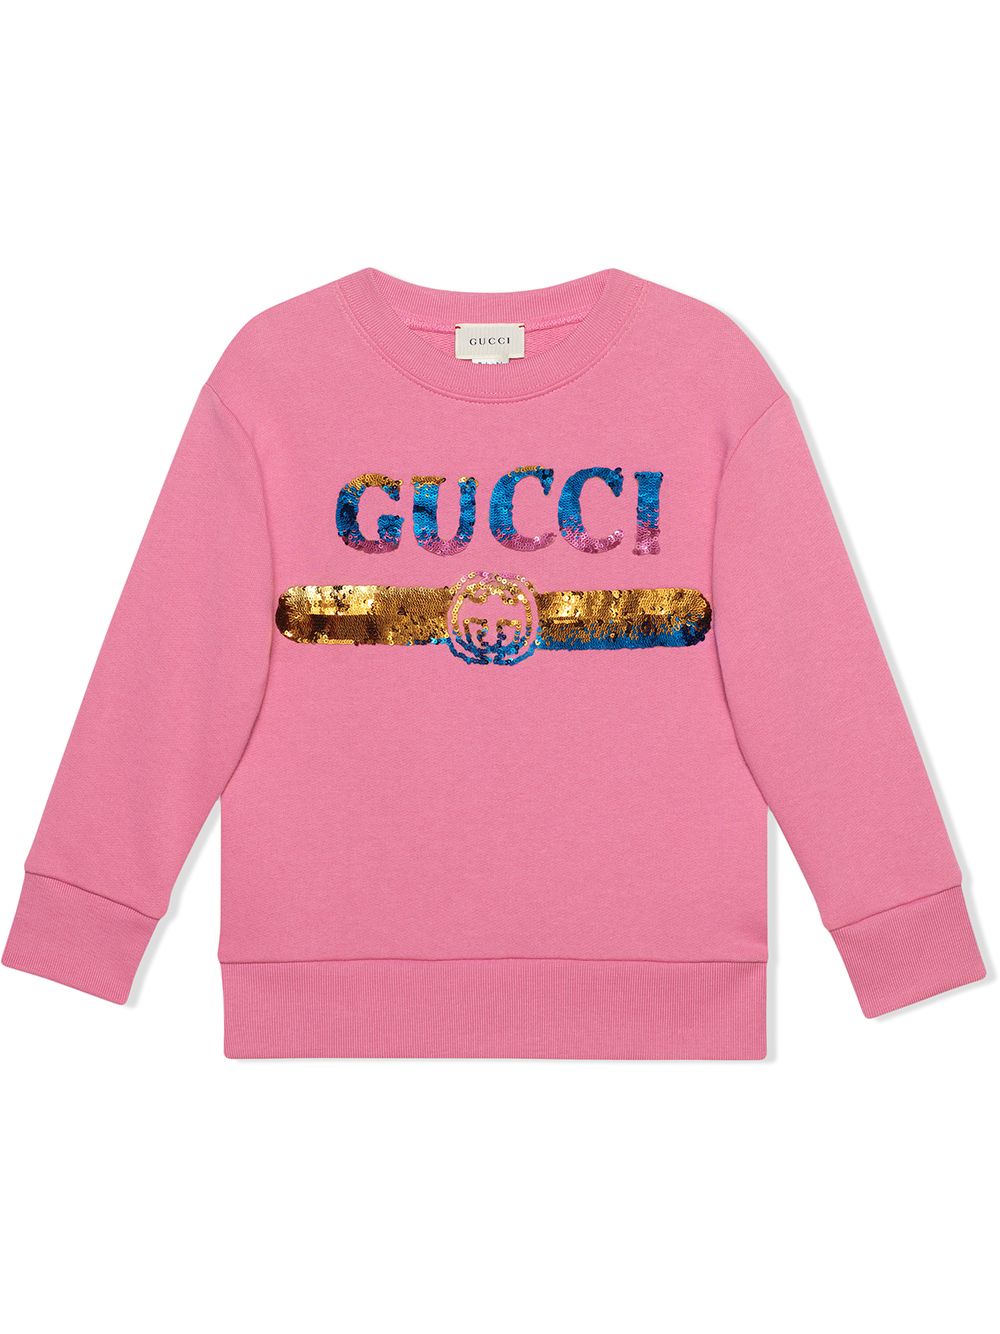 Gucci Kids Sweatshirt mit Gucci-Logo - Rosa von Gucci Kids